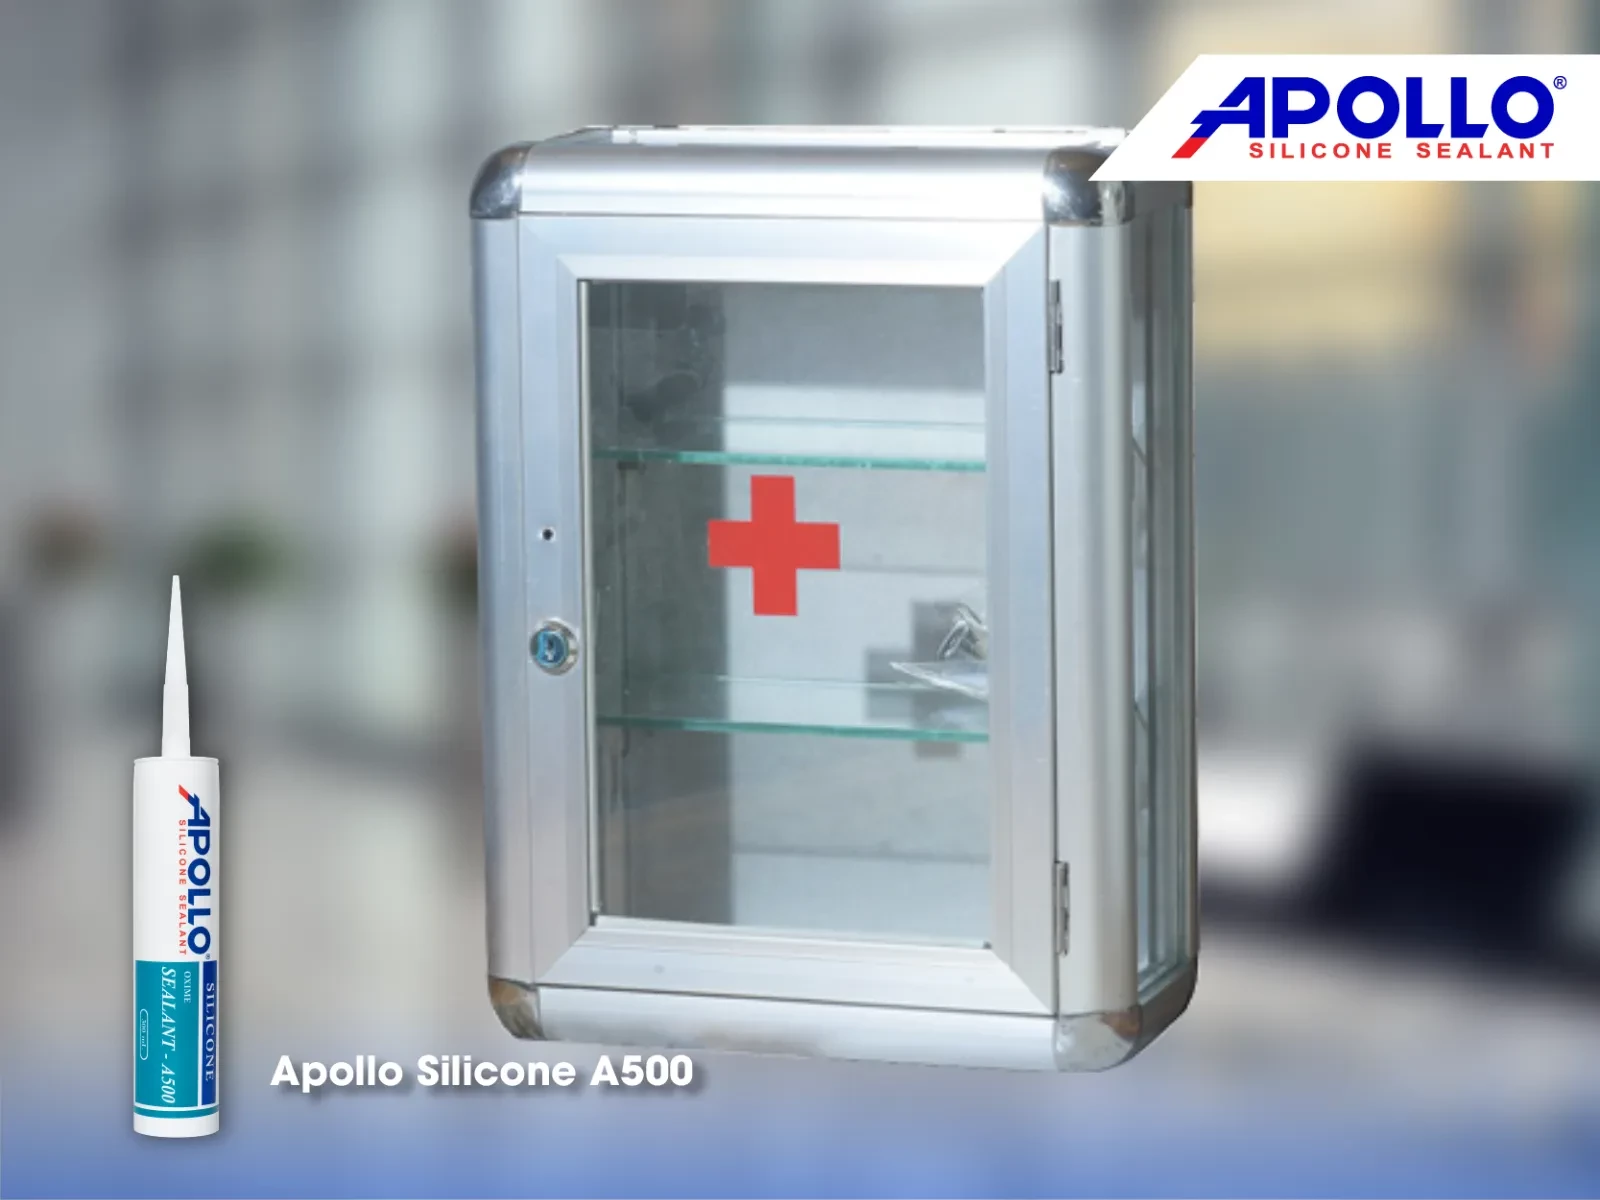 Dùng Apollo A500 thi công trám khe hở tủ y tế nhôm kính sẽ giúp đảm bảo tính thẩm mỹ và độ bền của tủ